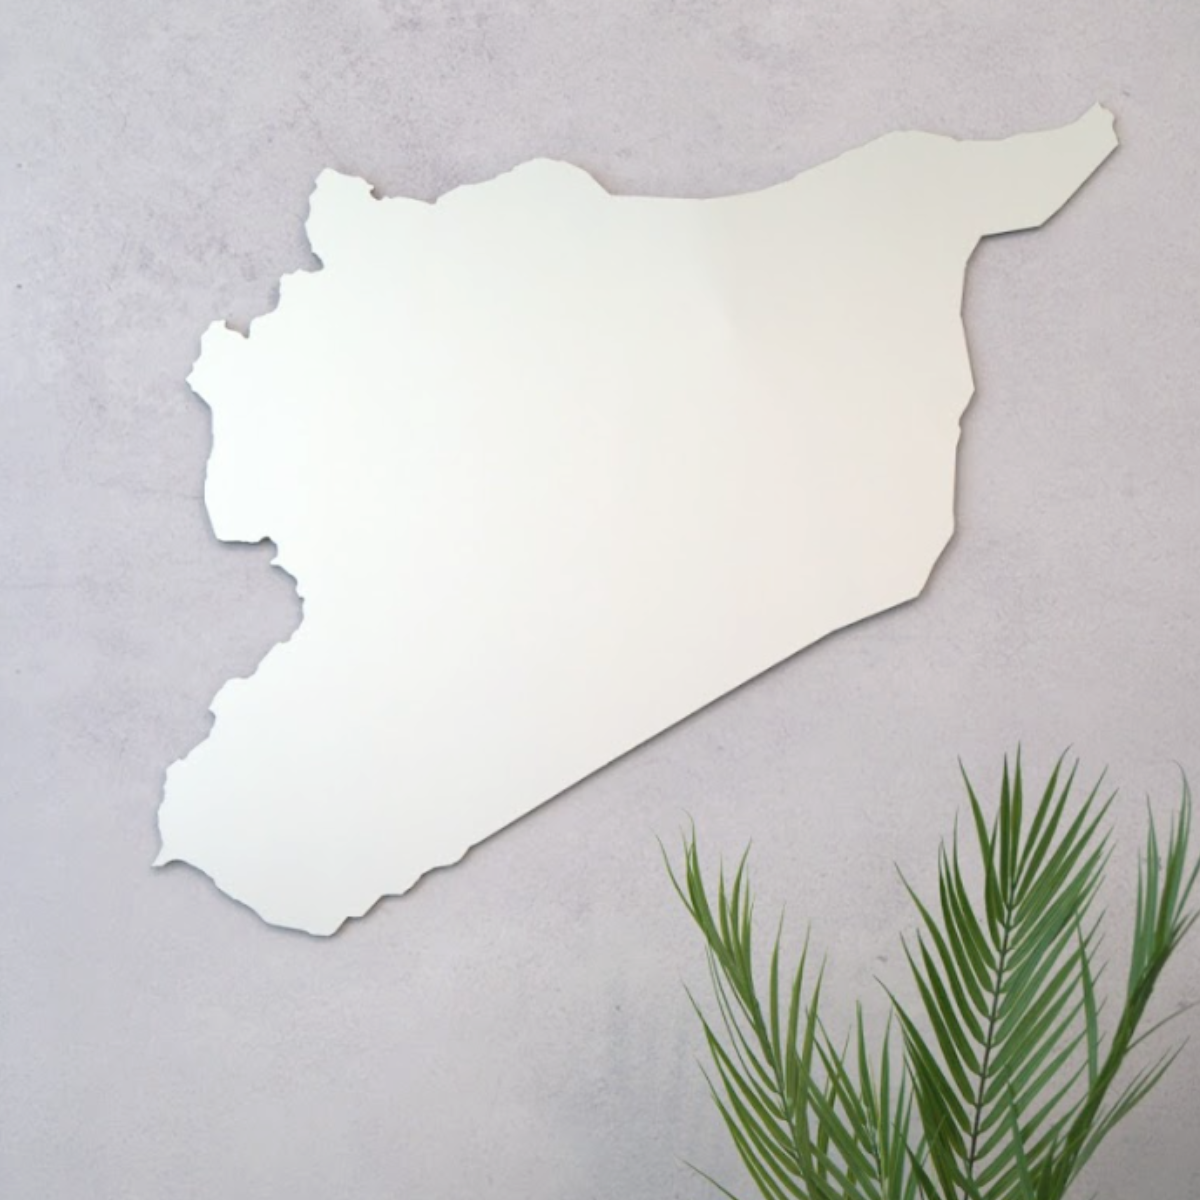 مرآة خريطة سوريا